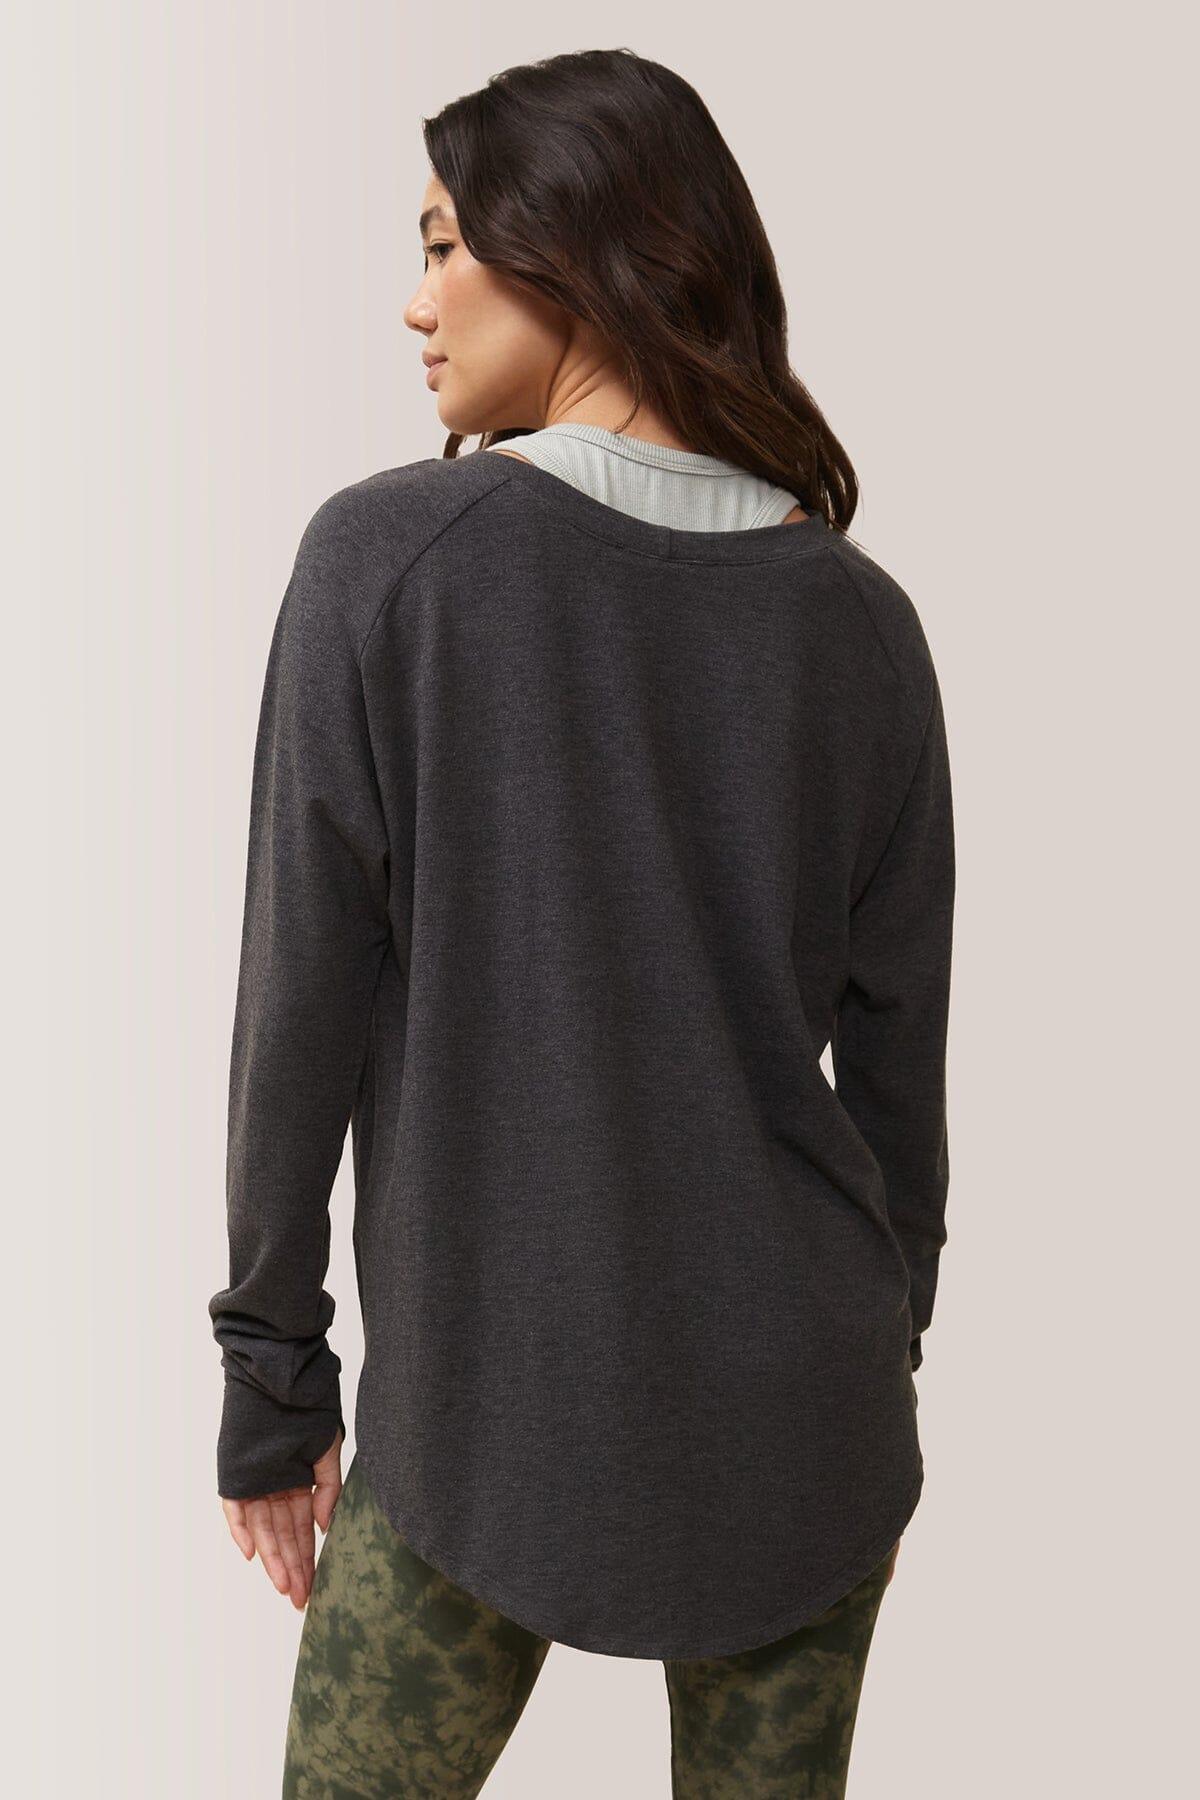 Femme qui porte le chandail à manche longue Cozy de Rose Boreal./ Women wearing the Cozy Long Sleeve Shirt by Rose Boreal. -Meteorite